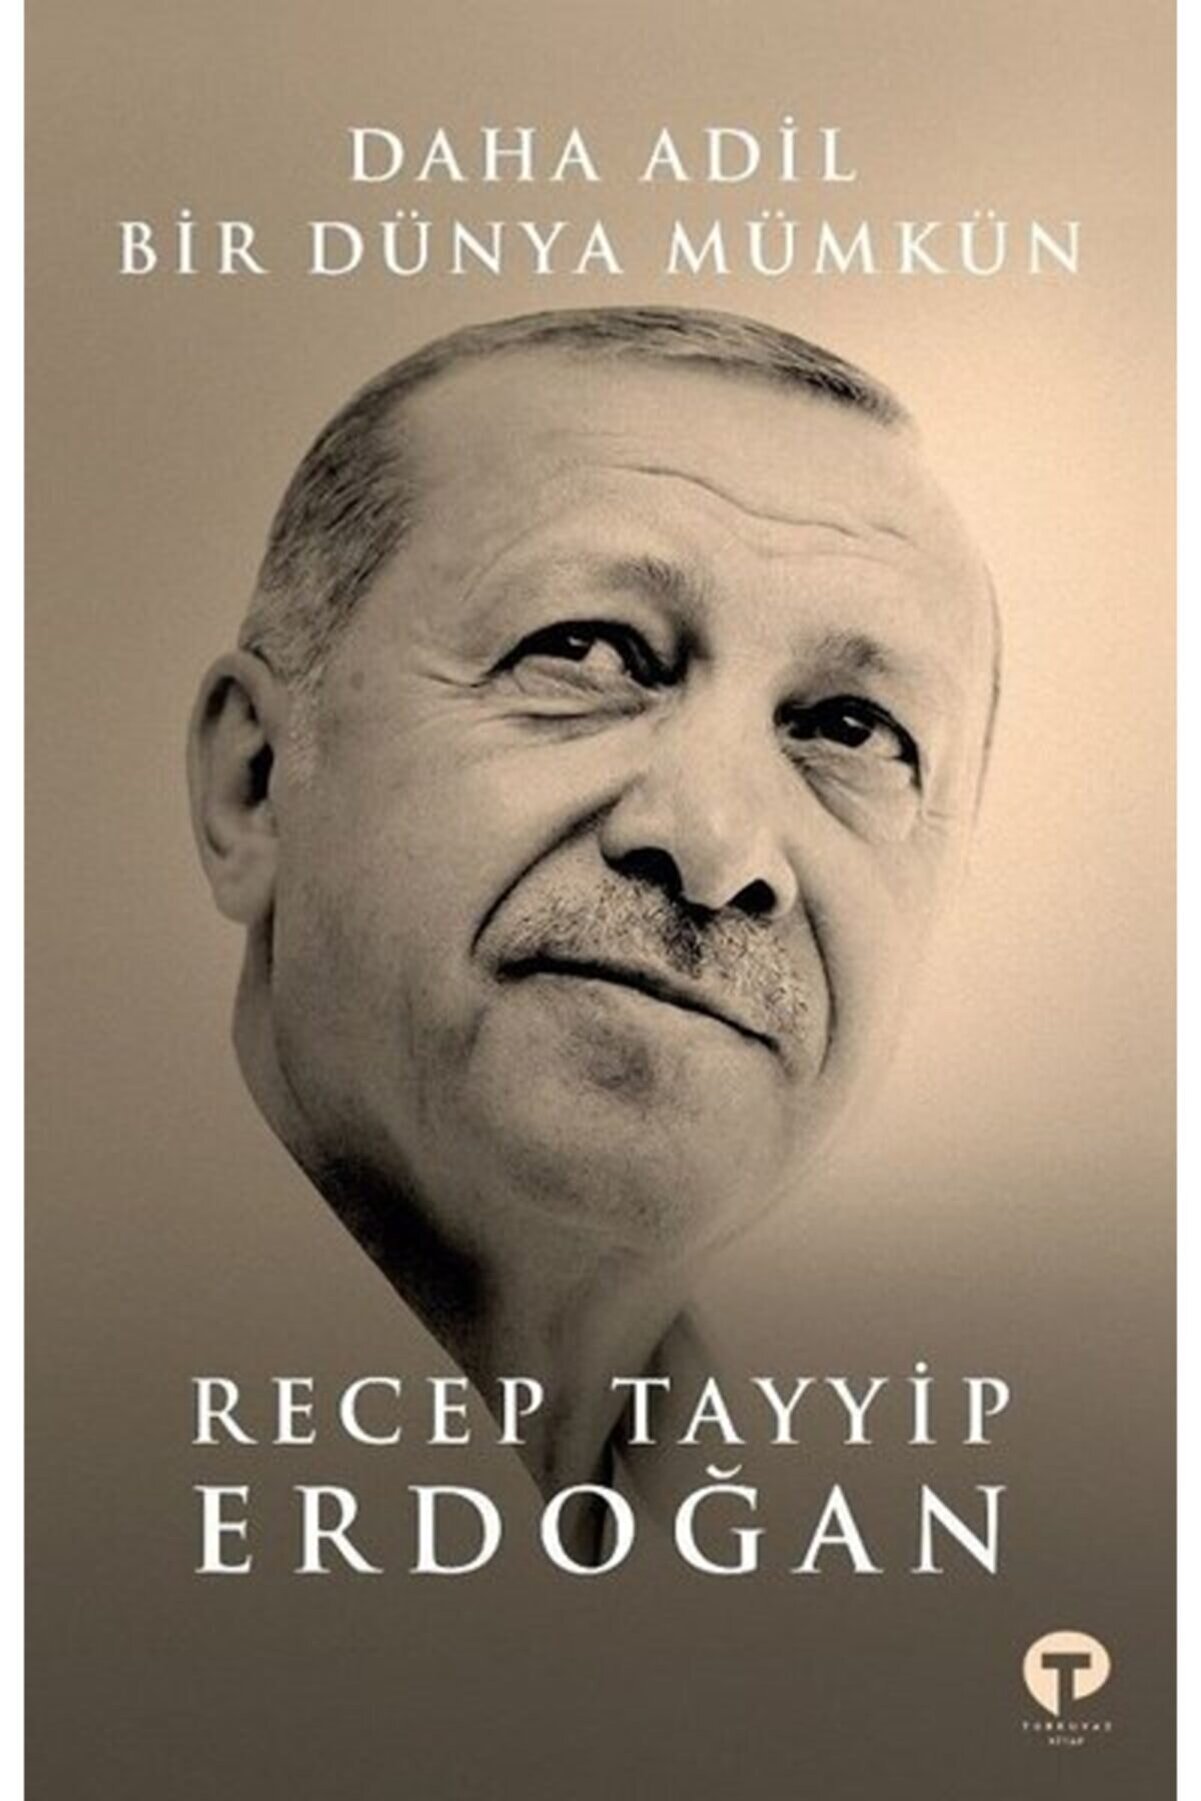 Turkuvaz Kitap Daha Adil Bir Dünya Mümkün / Recep Tayyip Erdoğan